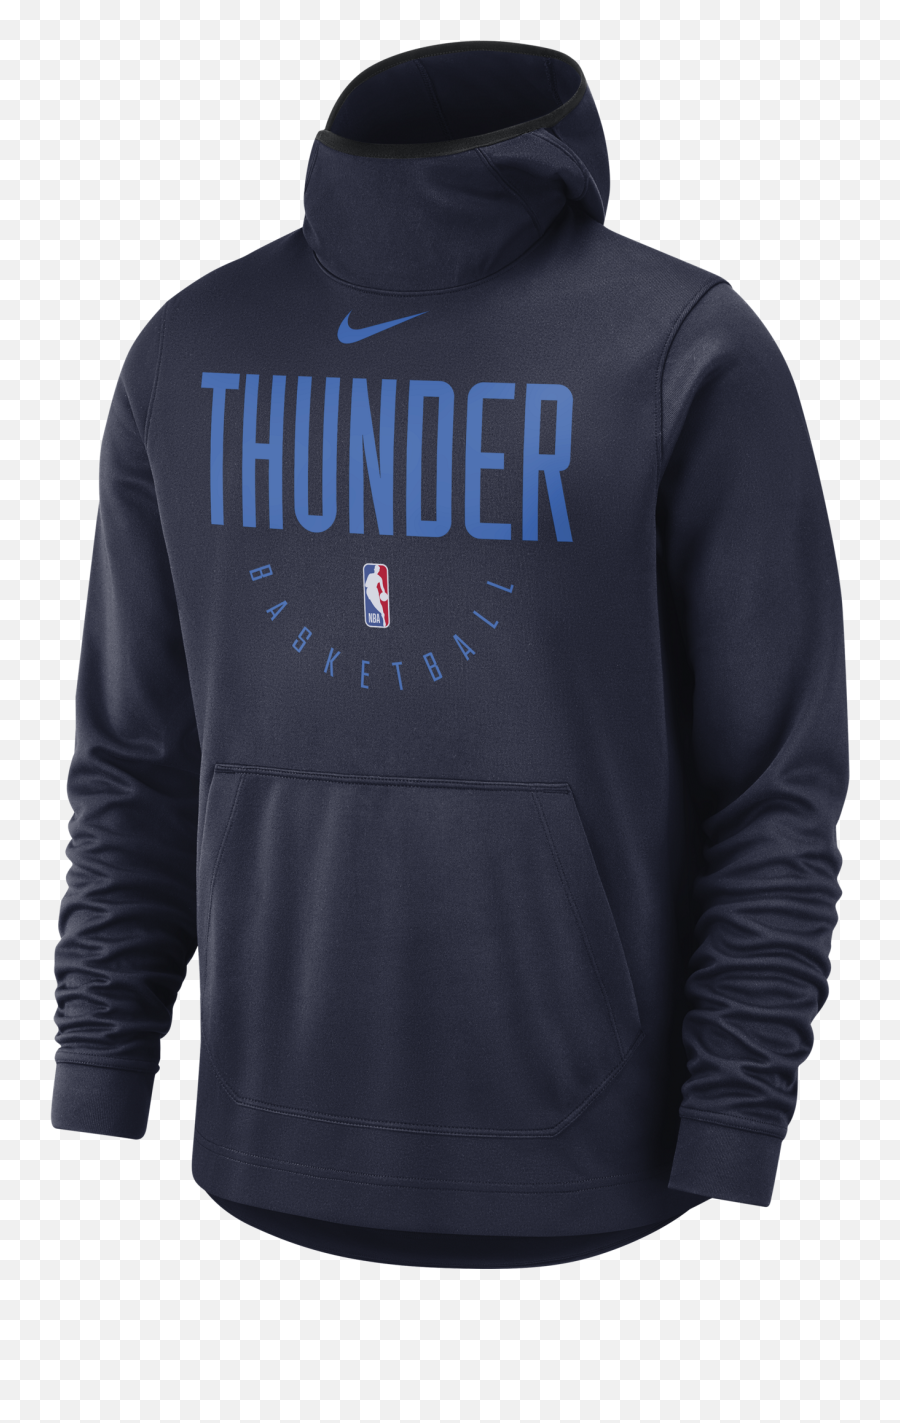 Nike Nba Oklahoma City Thunder Spotlight Hoodie For 6000 - Oklahoma City Thunder 2013 Png,Okc Thunder Png